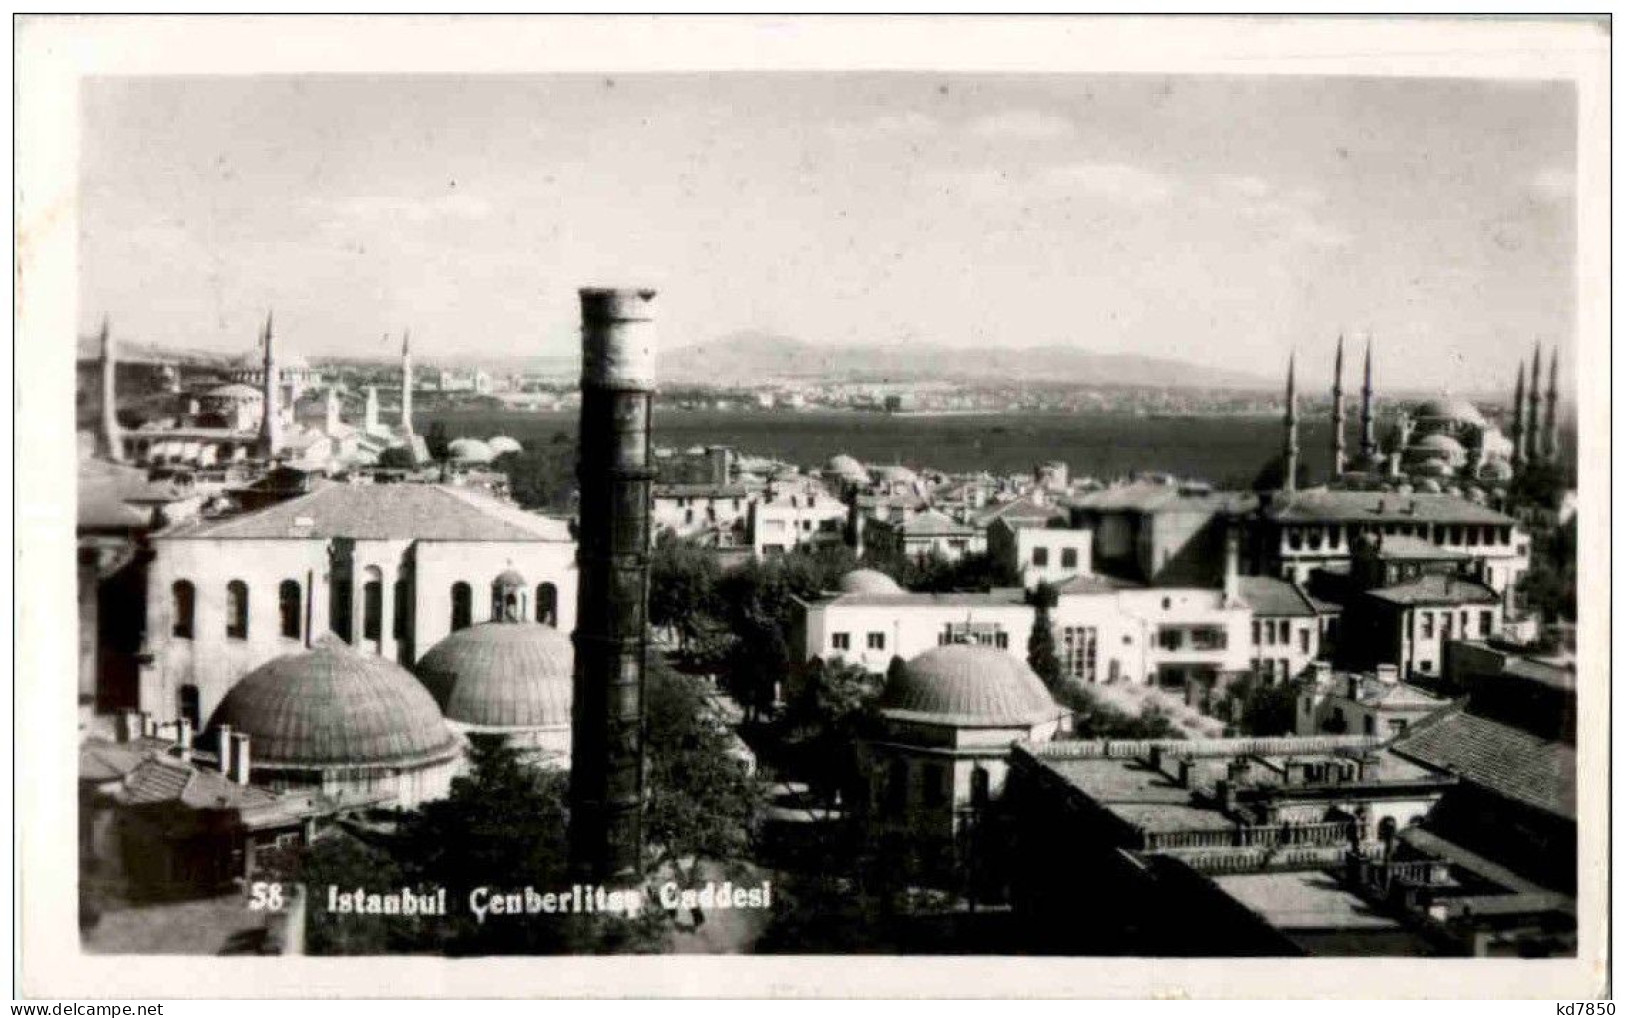 Istanbul - Cenberlitsy Caddesi - Turkey